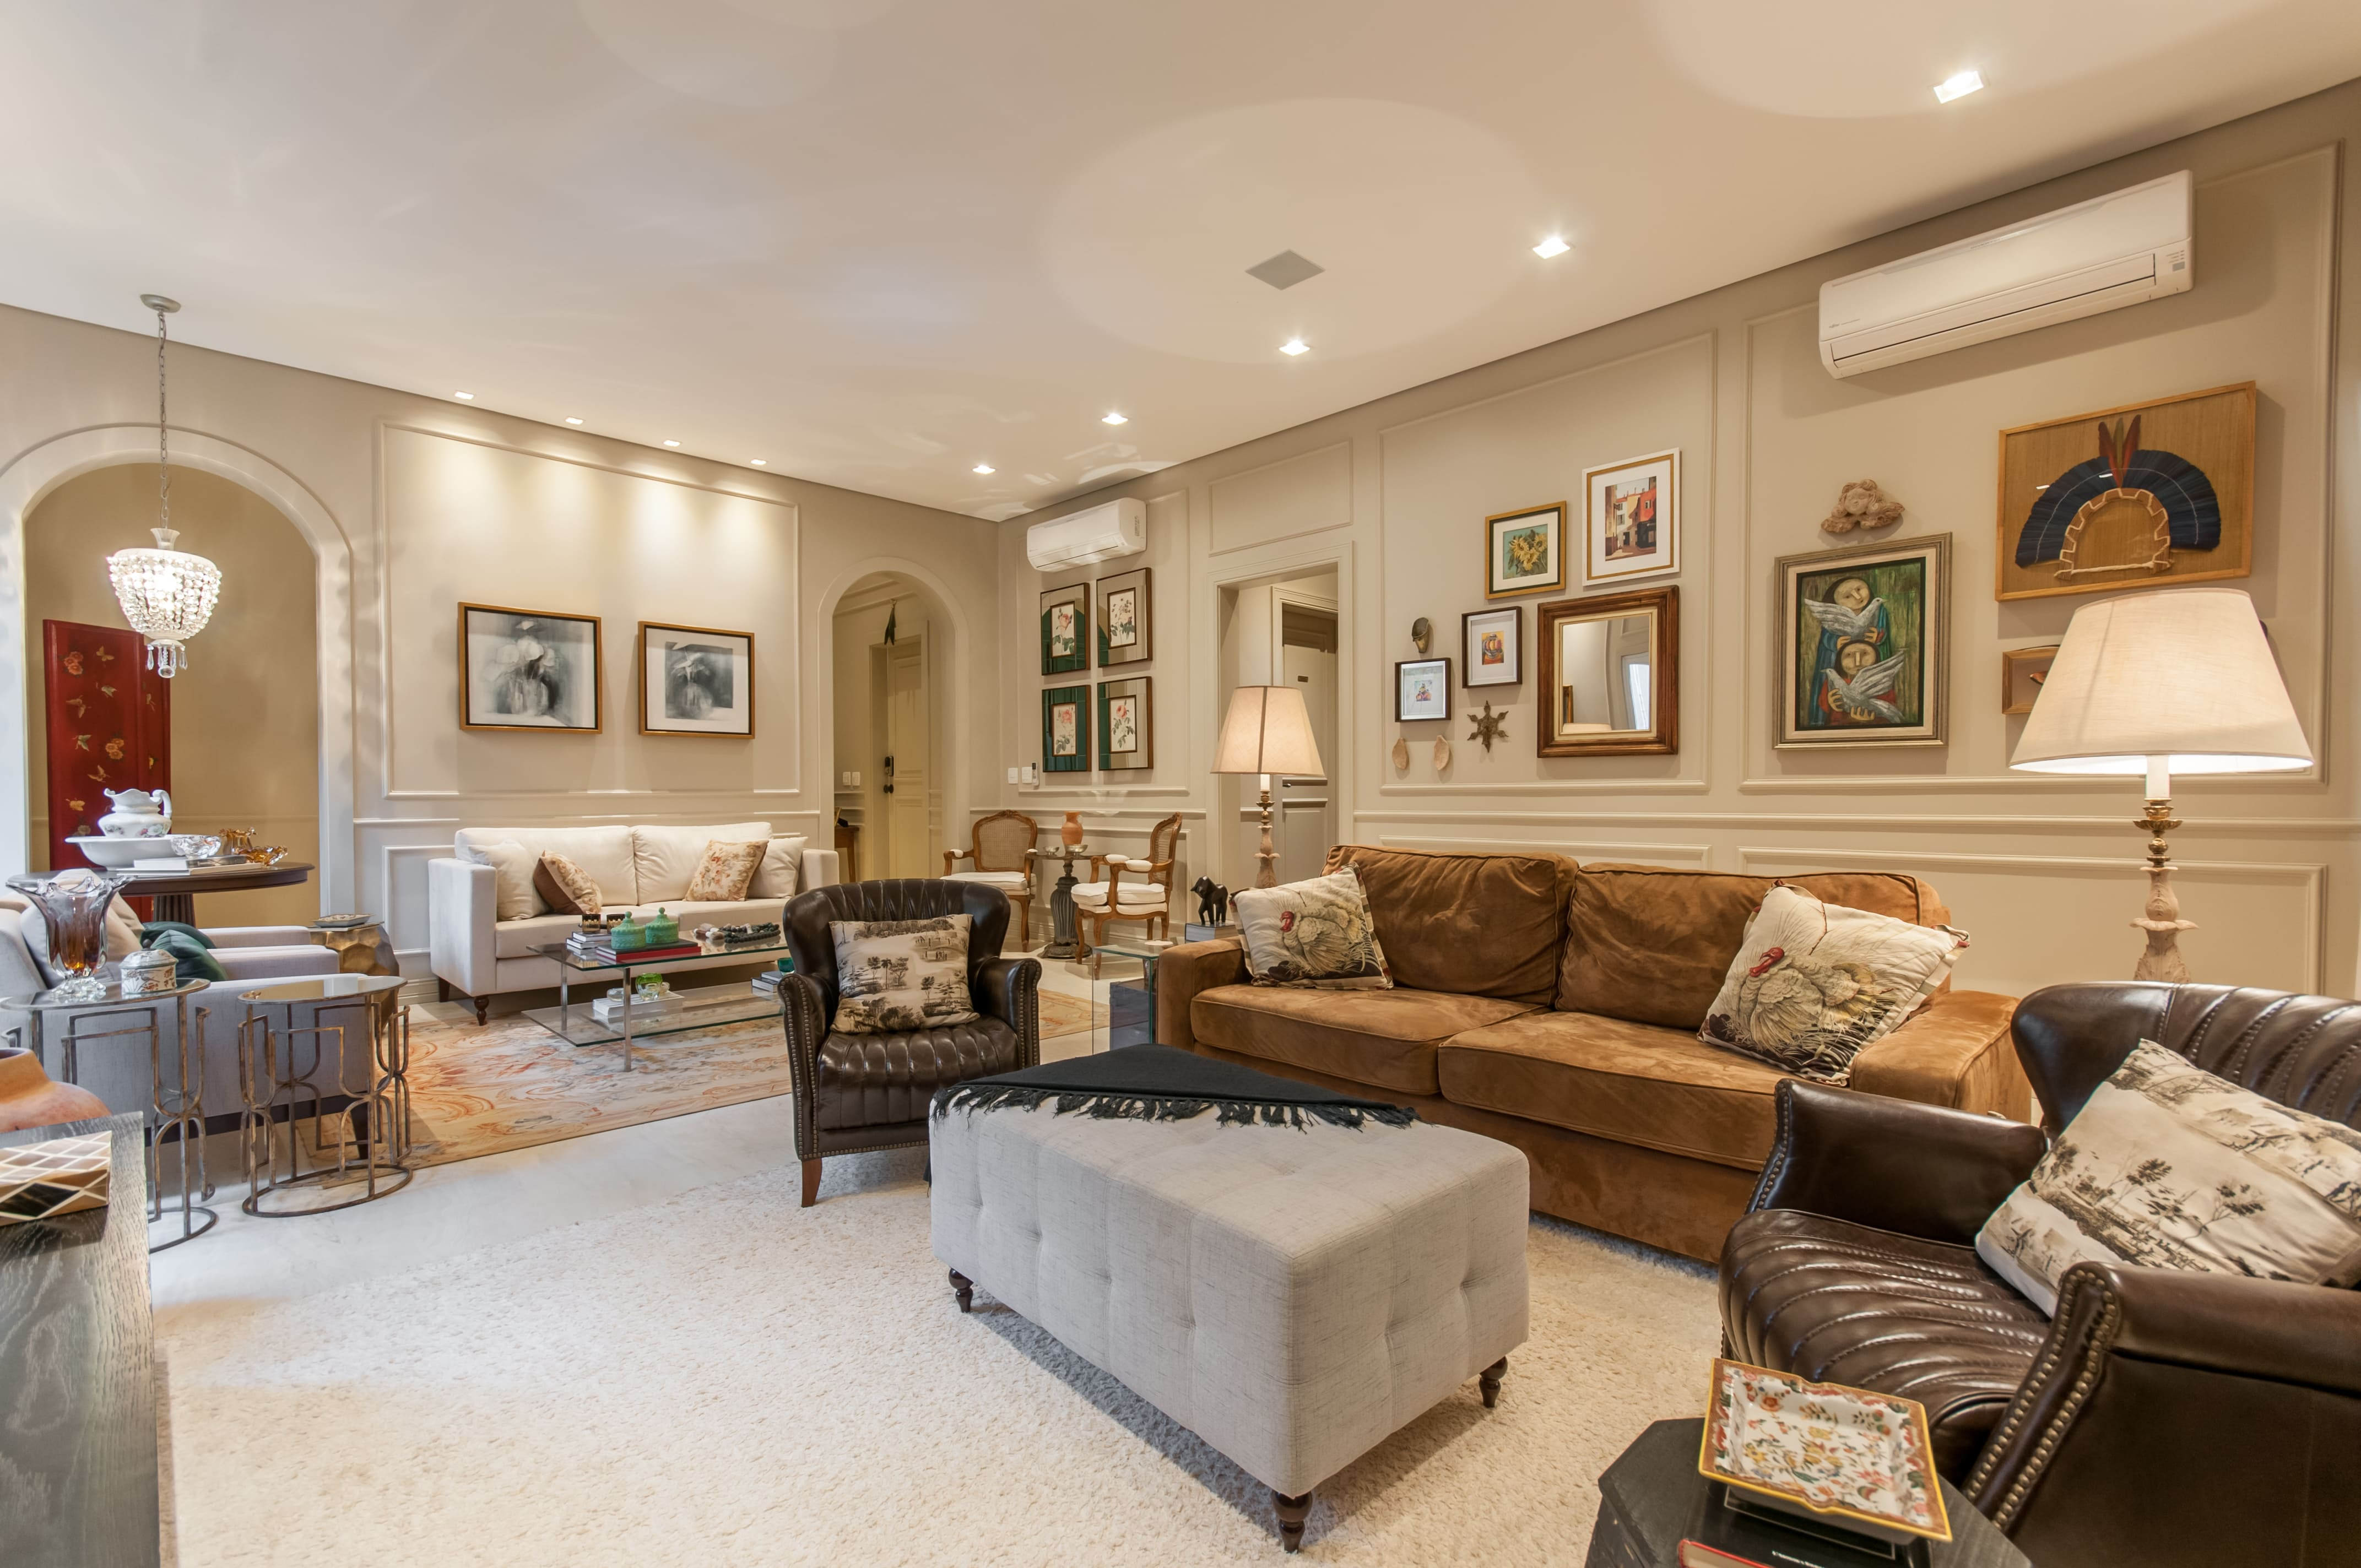 Sala de estar com decoração clássica, boiseries nas paredes, sofá marrom, poltronas de couro e pufe como mesa de centro.